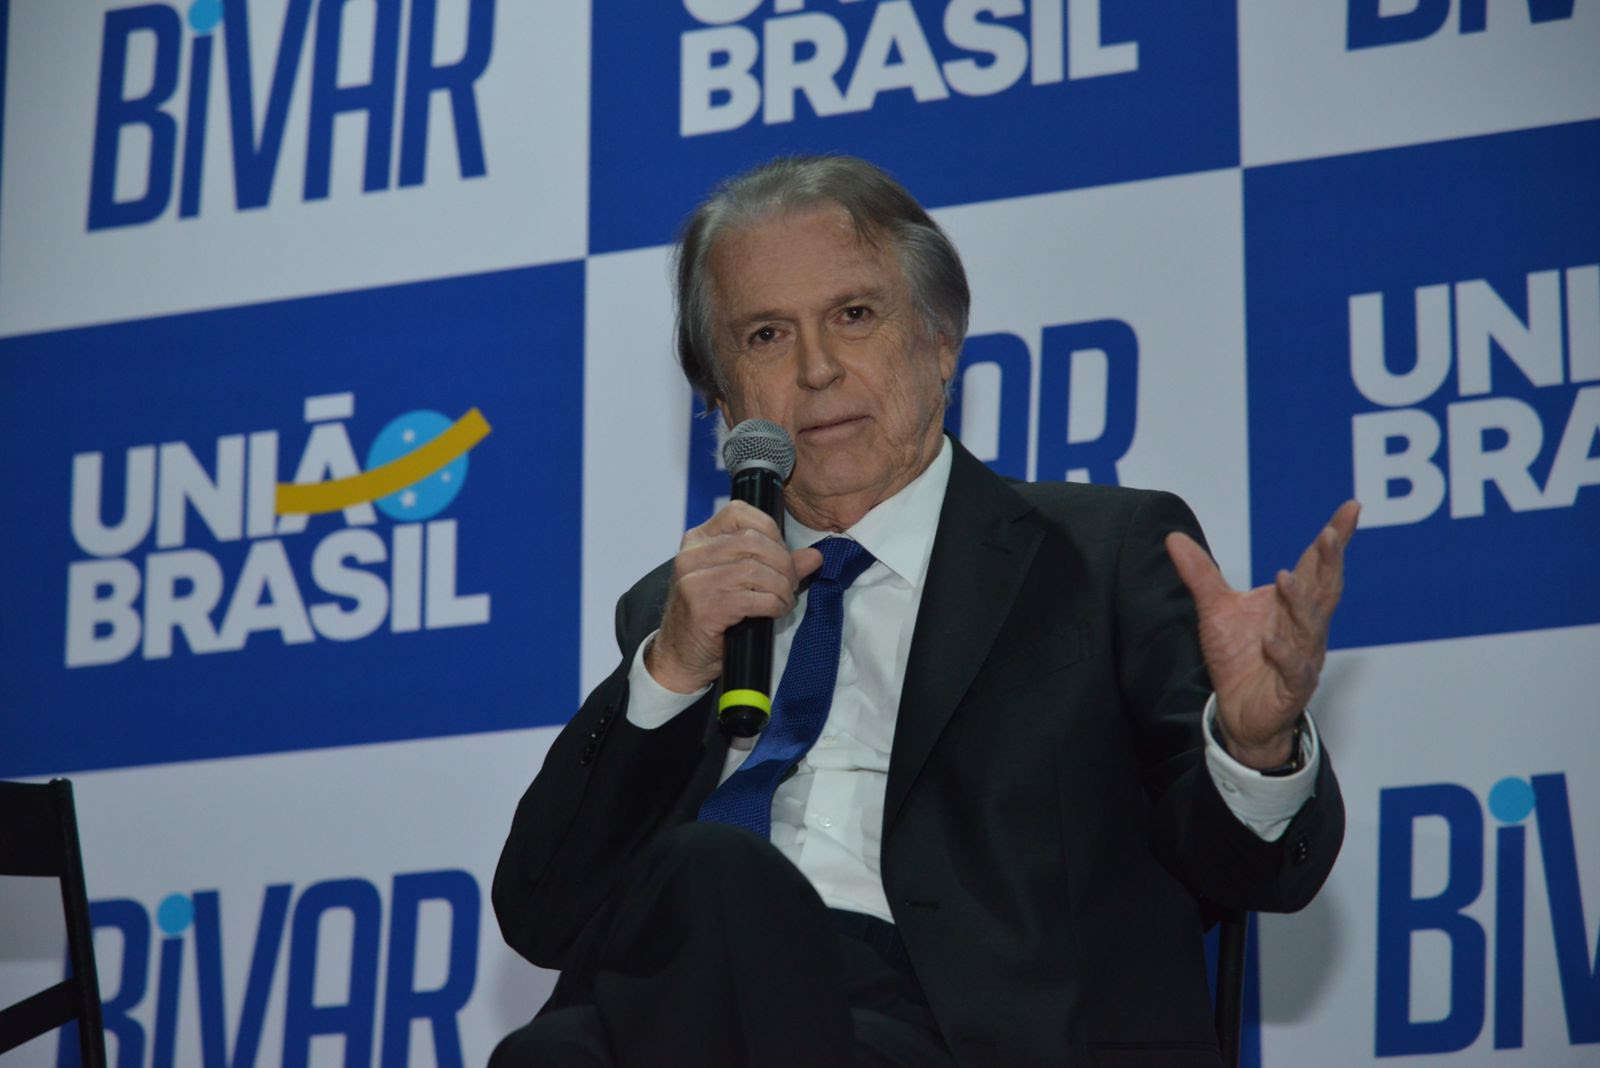 Pré-candidato à presidência da República, Bivar sinaliza chapa puro-sangue, defende imposto único e critica PT e Bolsonaro